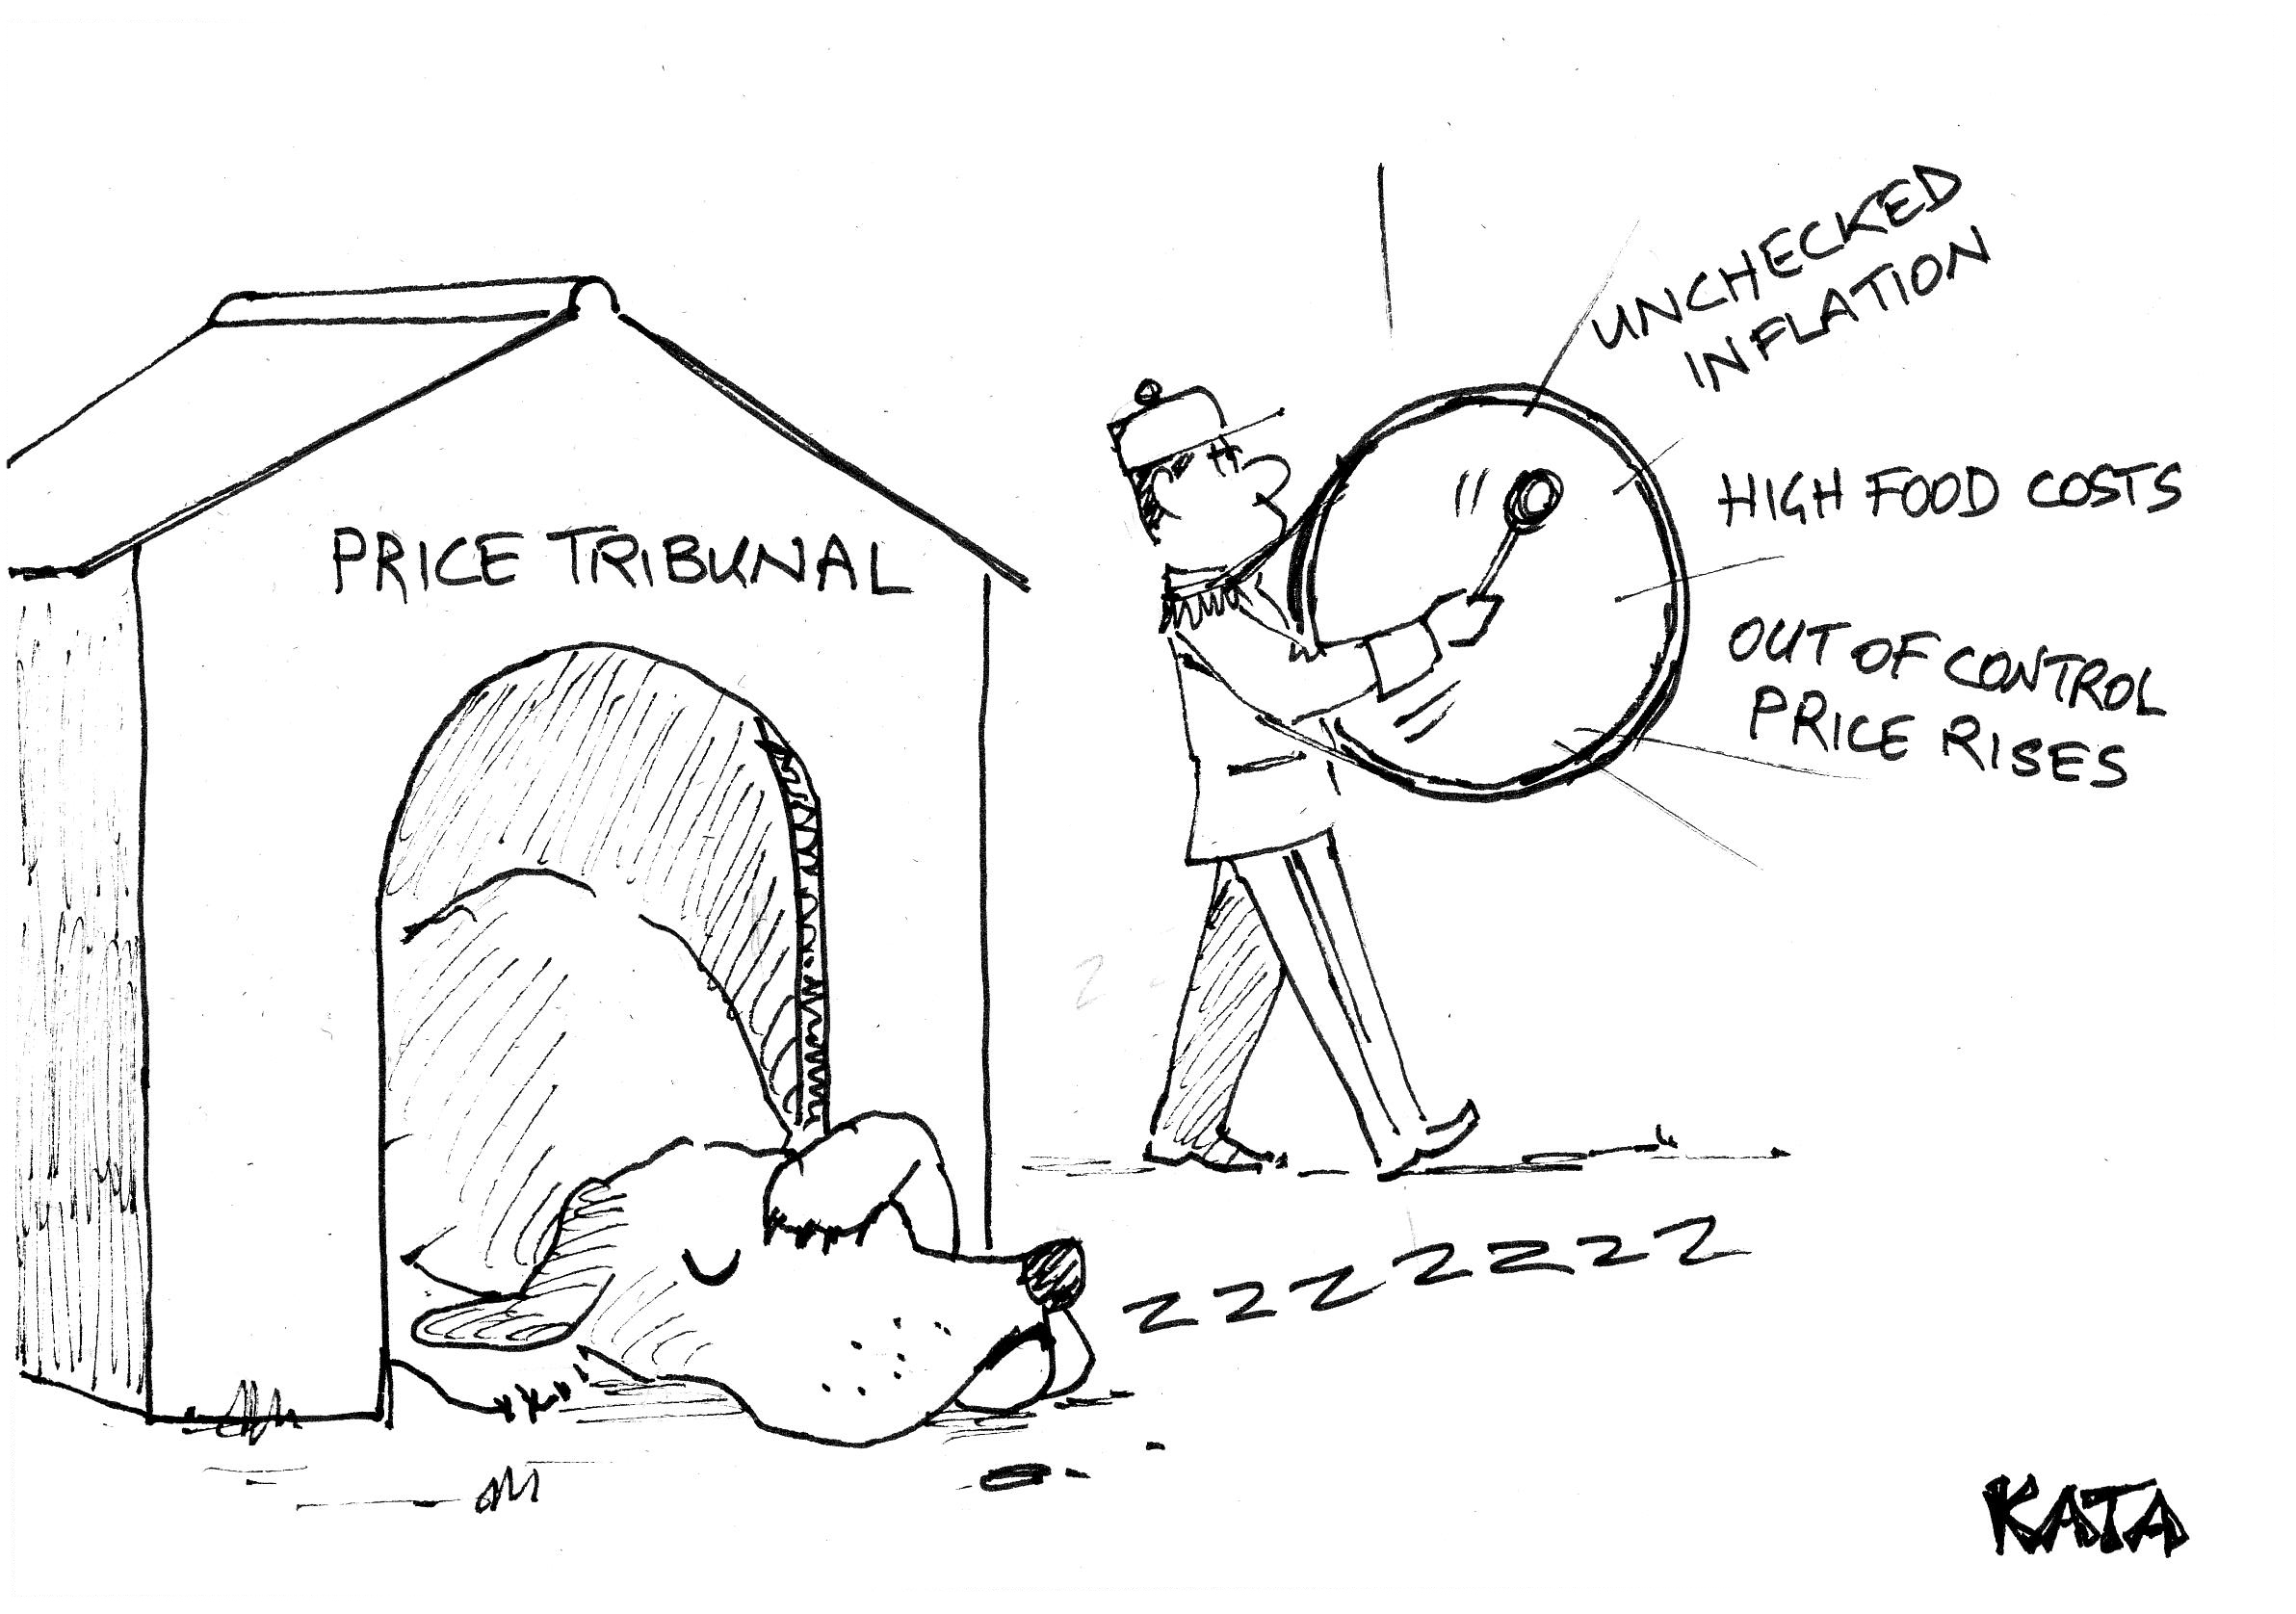 Kata: Price Tribunal